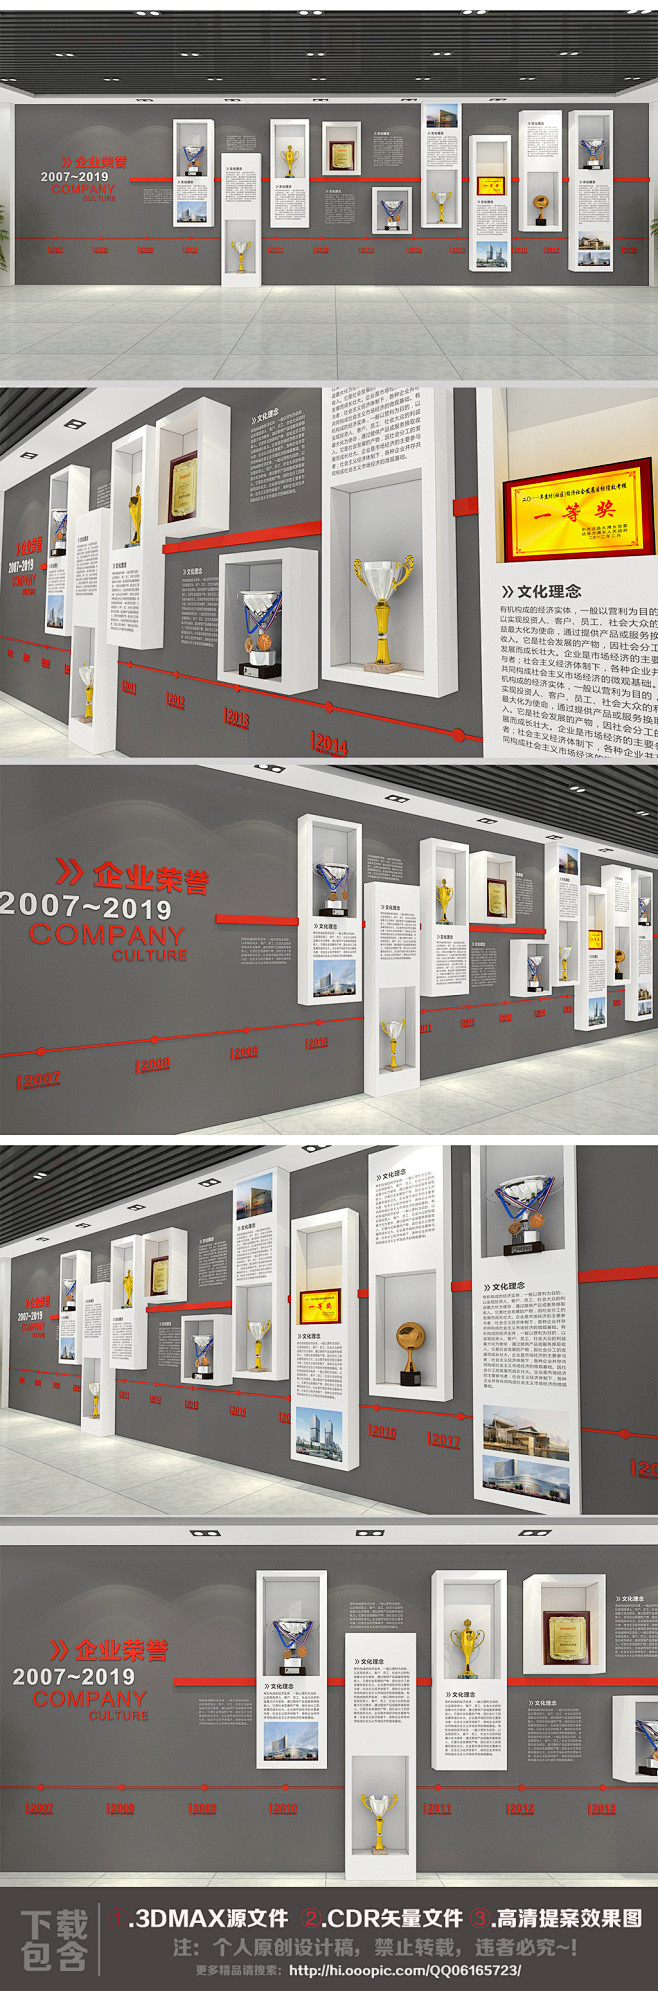 企业荣誉墙展厅设计公司文化墙效果图